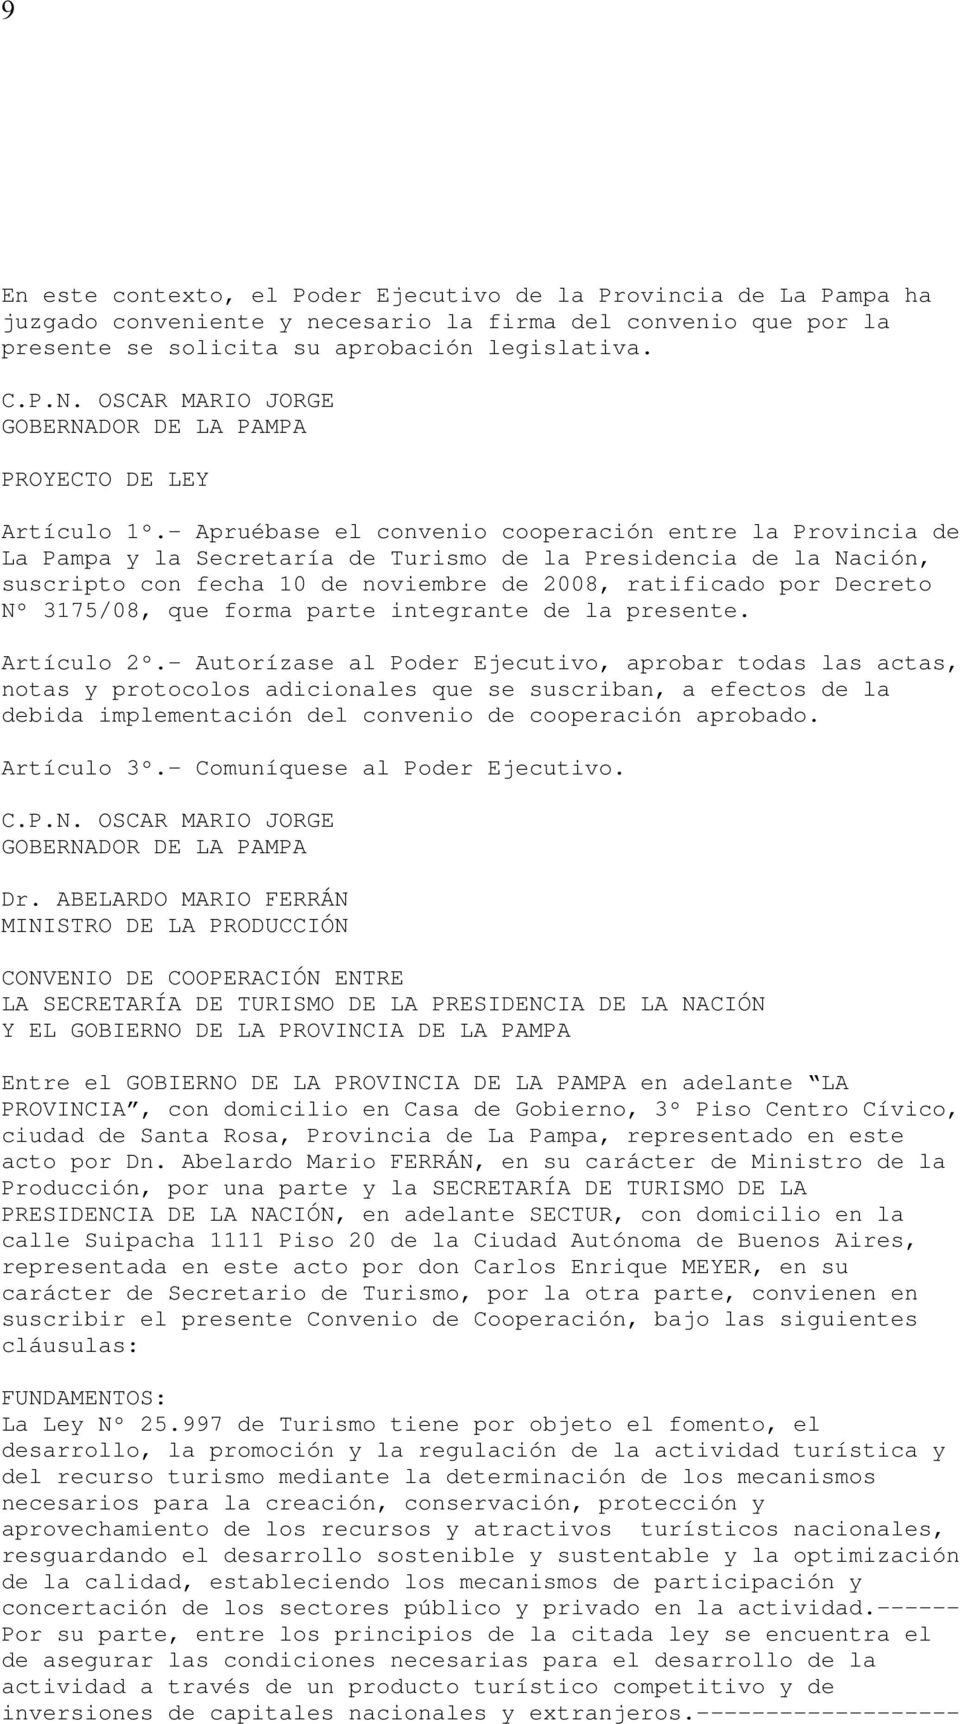 - Apruébase el convenio cooperación entre la Provincia de La Pampa y la Secretaría de Turismo de la Presidencia de la Nación, suscripto con fecha 10 de noviembre de 2008, ratificado por Decreto Nº